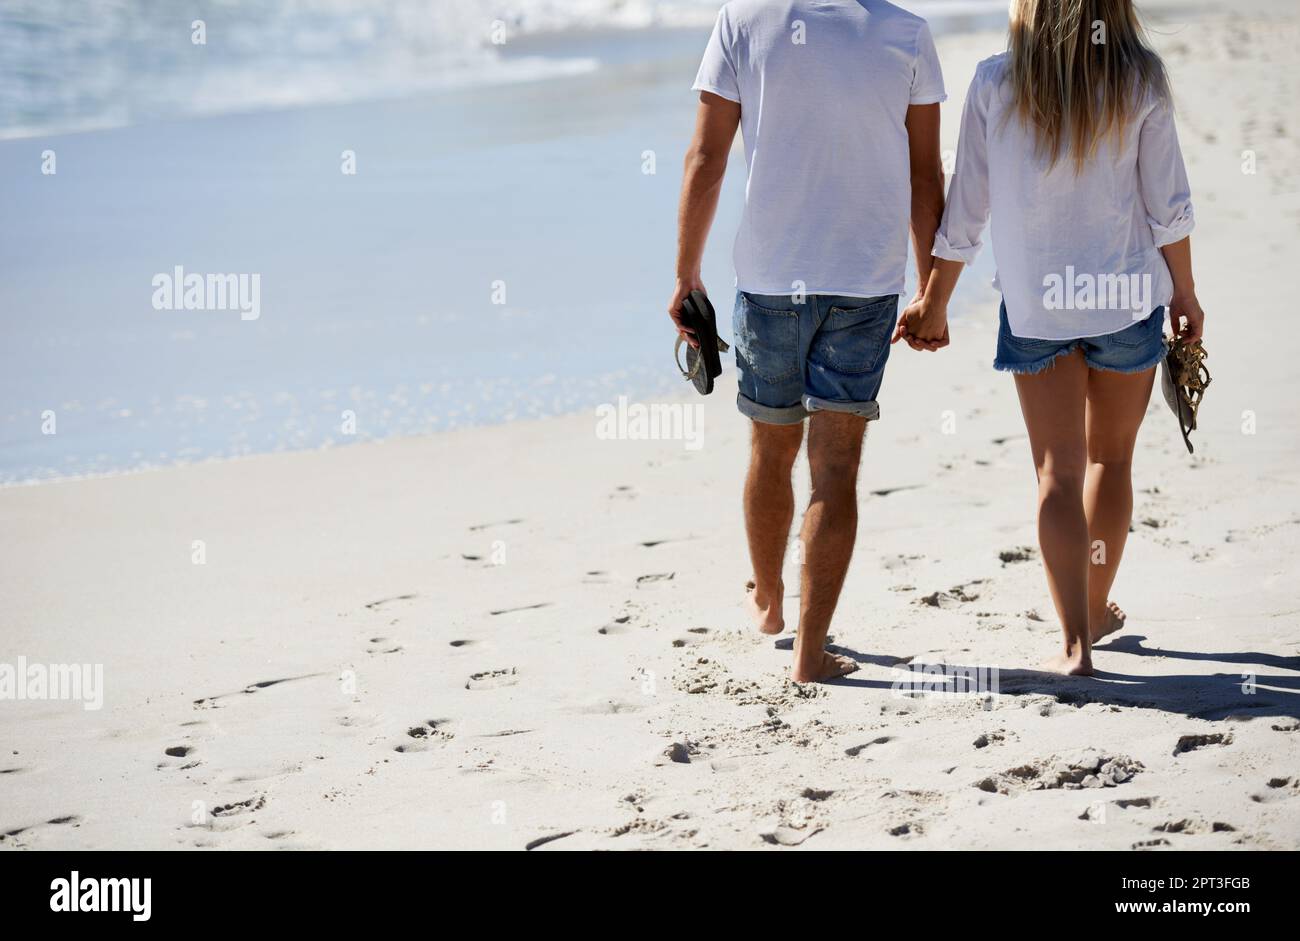 Partner di stimolazione. Immagine ritagliata di una coppia che cammina sulla spiaggia Foto Stock